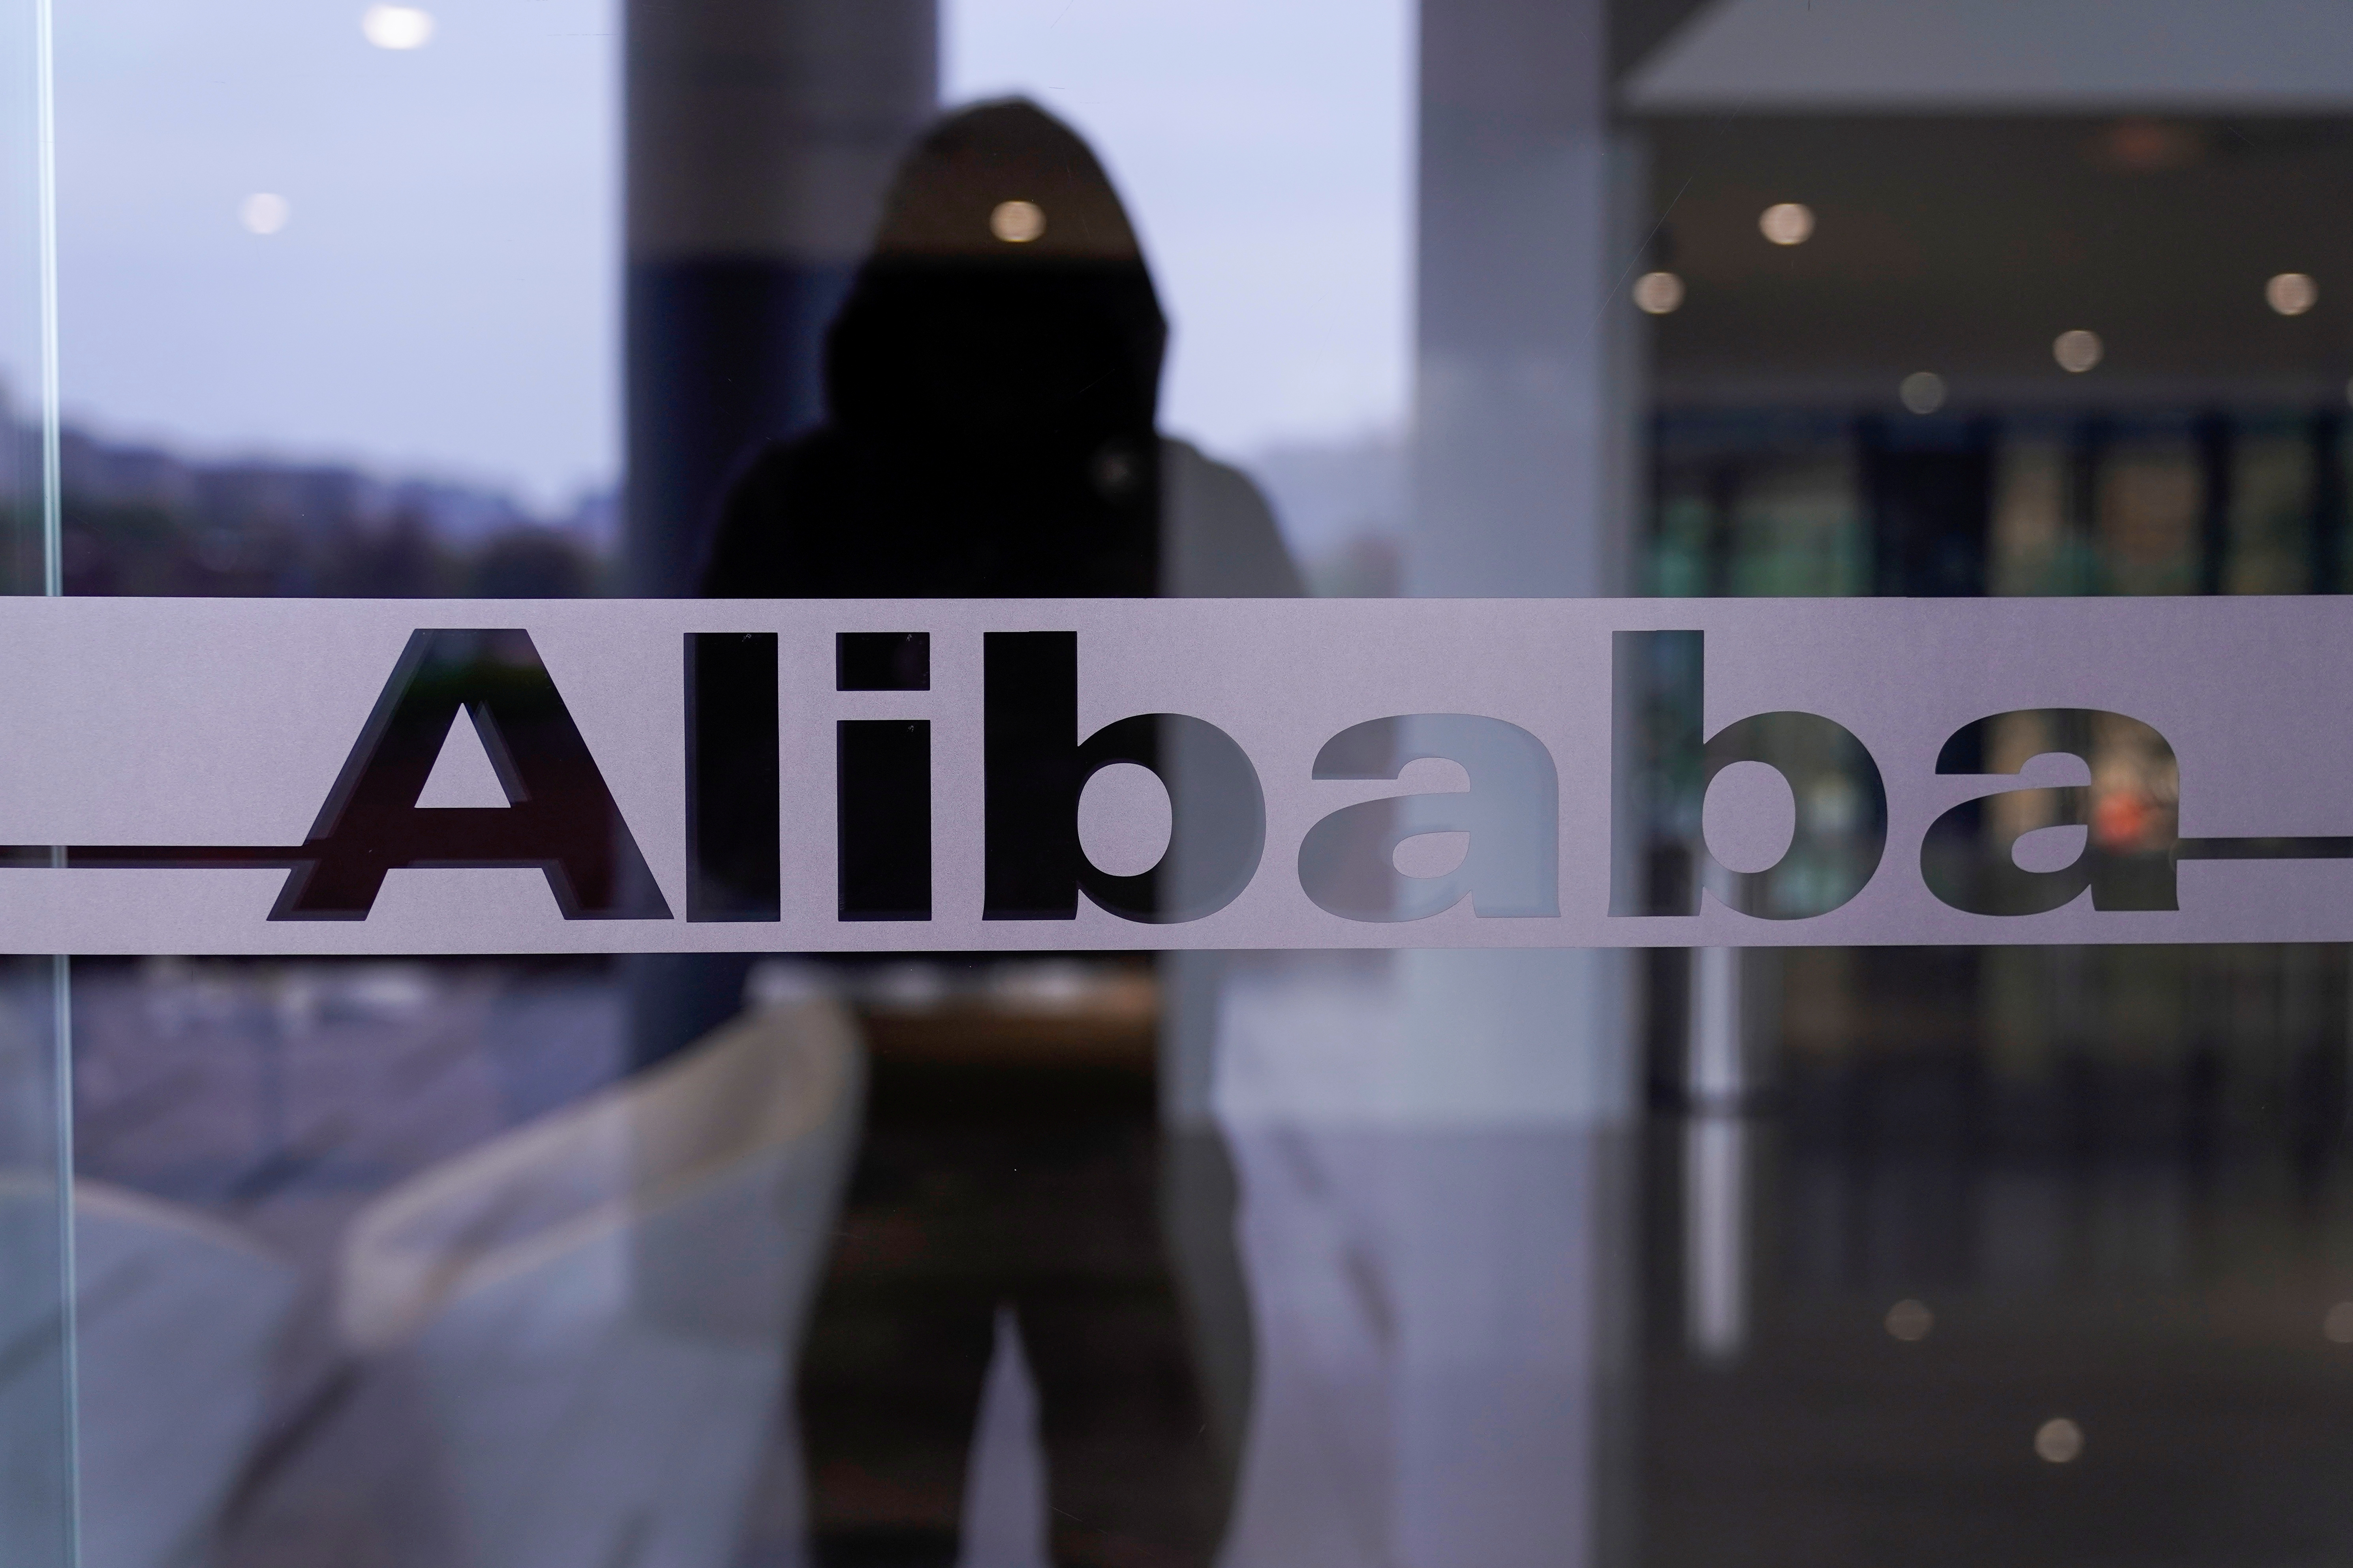 Le régulateur chinois inflige une amende astronomique à Alibaba... qui bondit en Bourse (+6%)